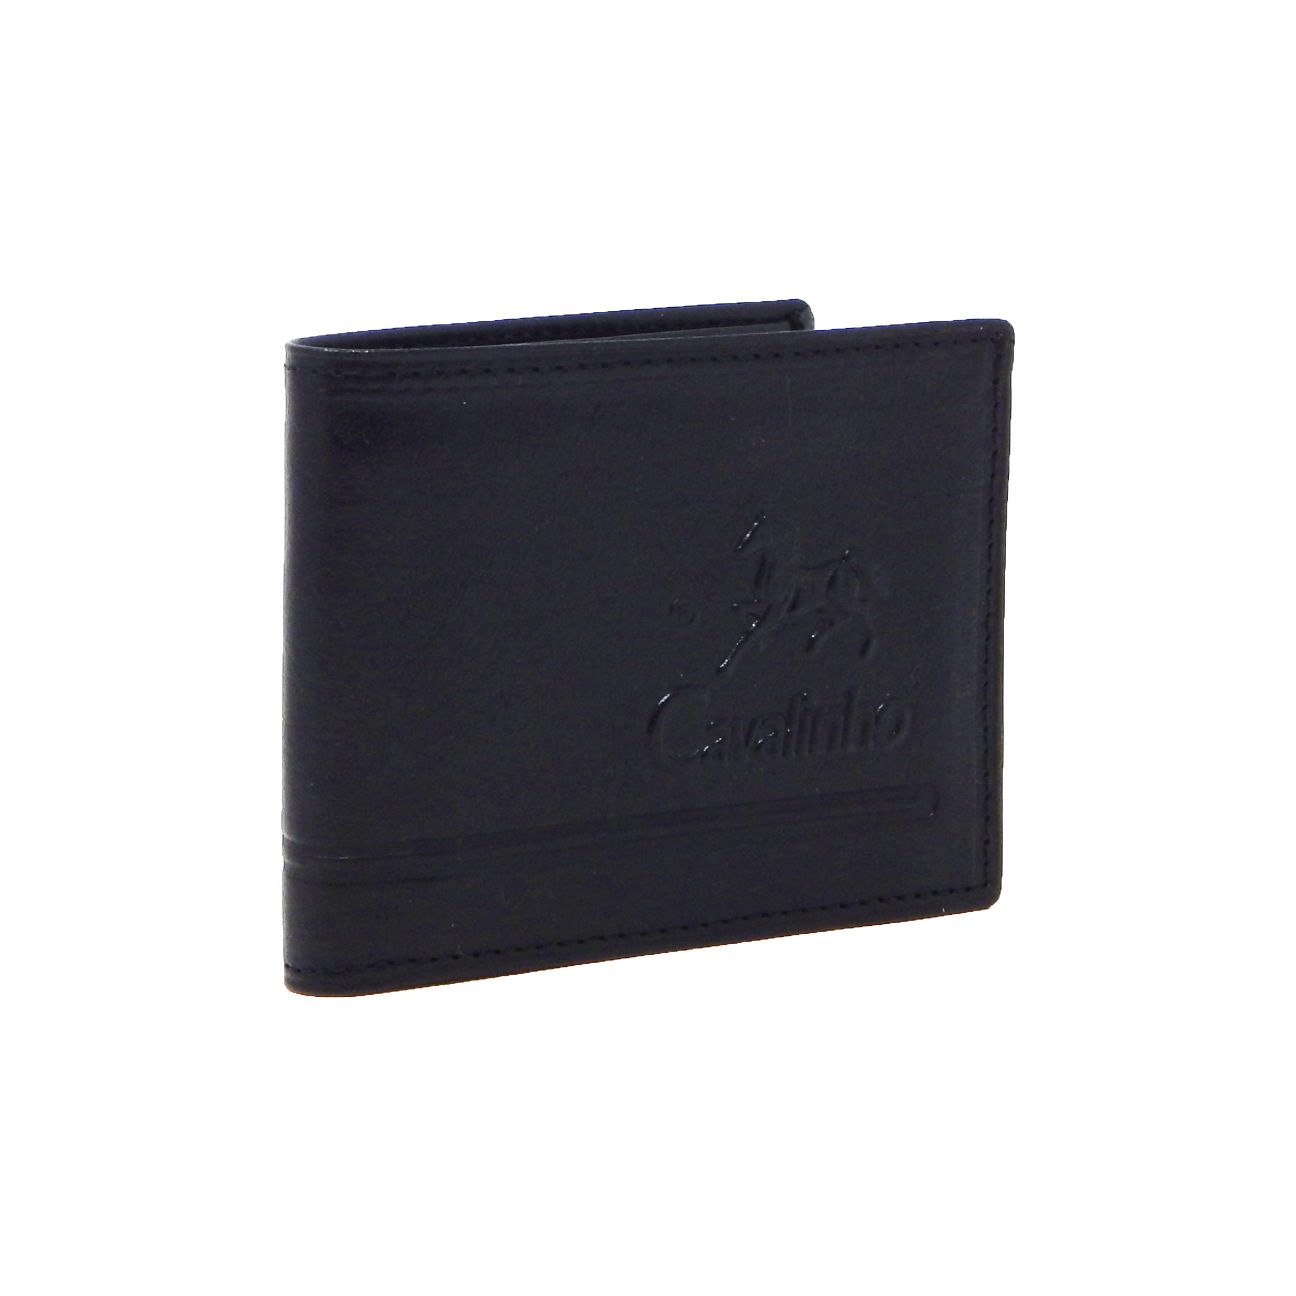 #color_ Black | Cavalinho Men's Trifold Leather Wallet - Black - 28610523.01.99_2